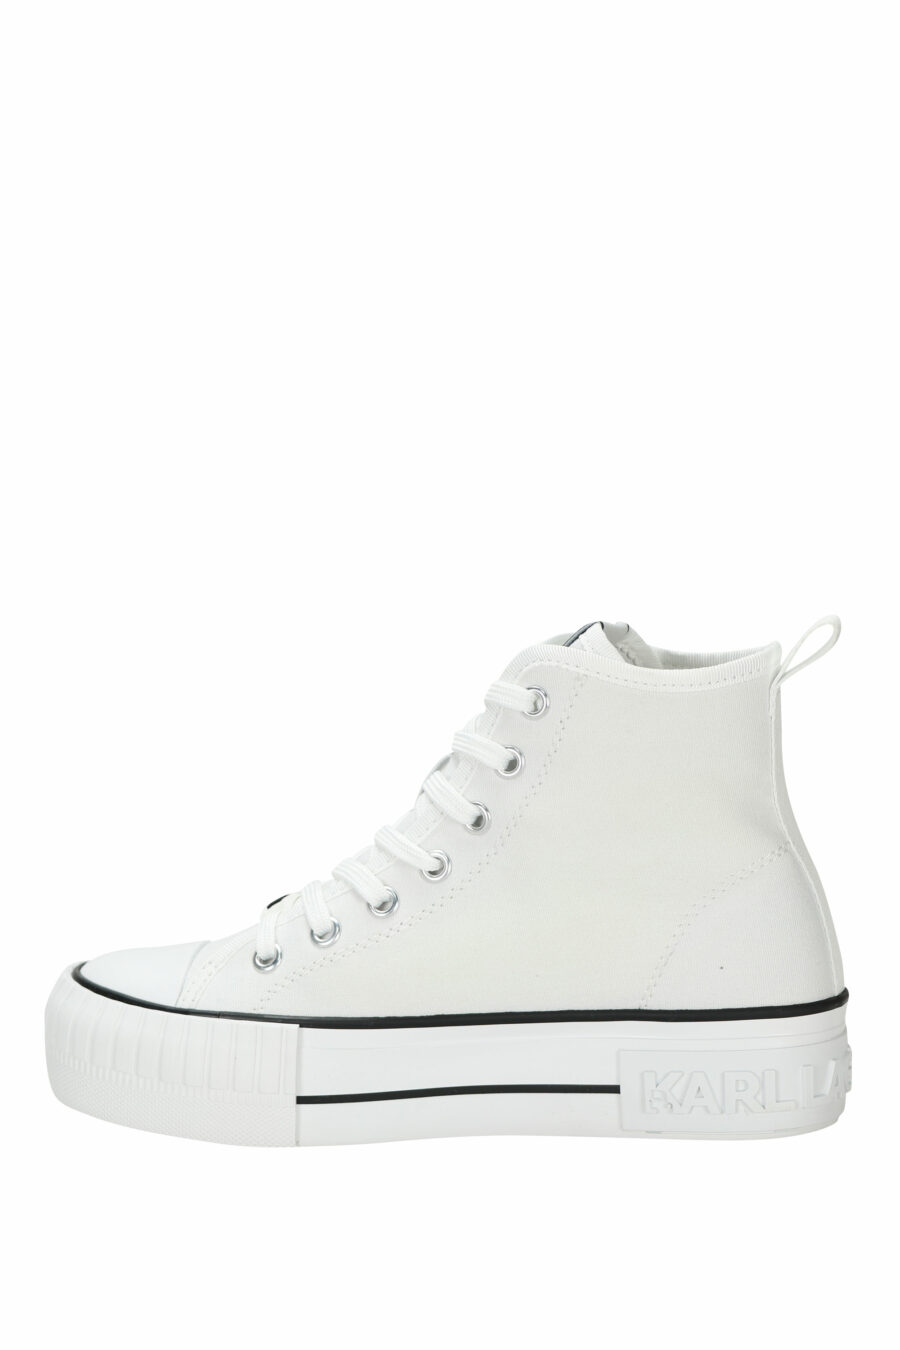 Zapatillas blancas altas estilo "converse" con minilogo de goma "karl" - 5059529384837 2